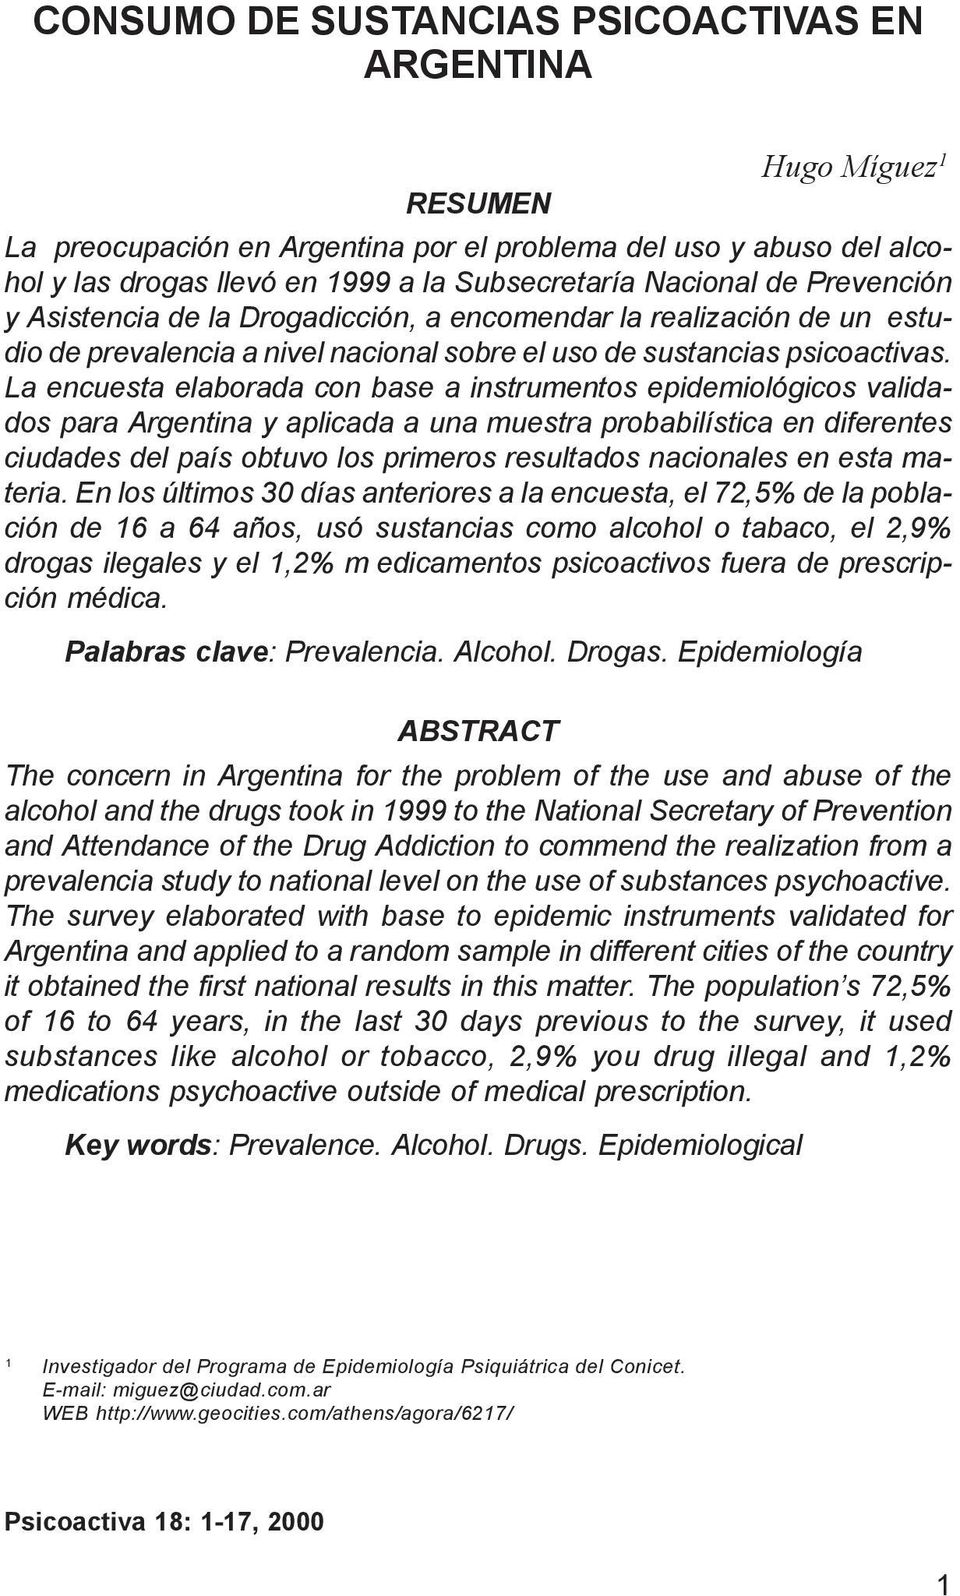 La encuesta elaborada con base a instrumentos epidemiológicos validados para Argentina y aplicada a una muestra probabilística en diferentes ciudades del país obtuvo los primeros resultados